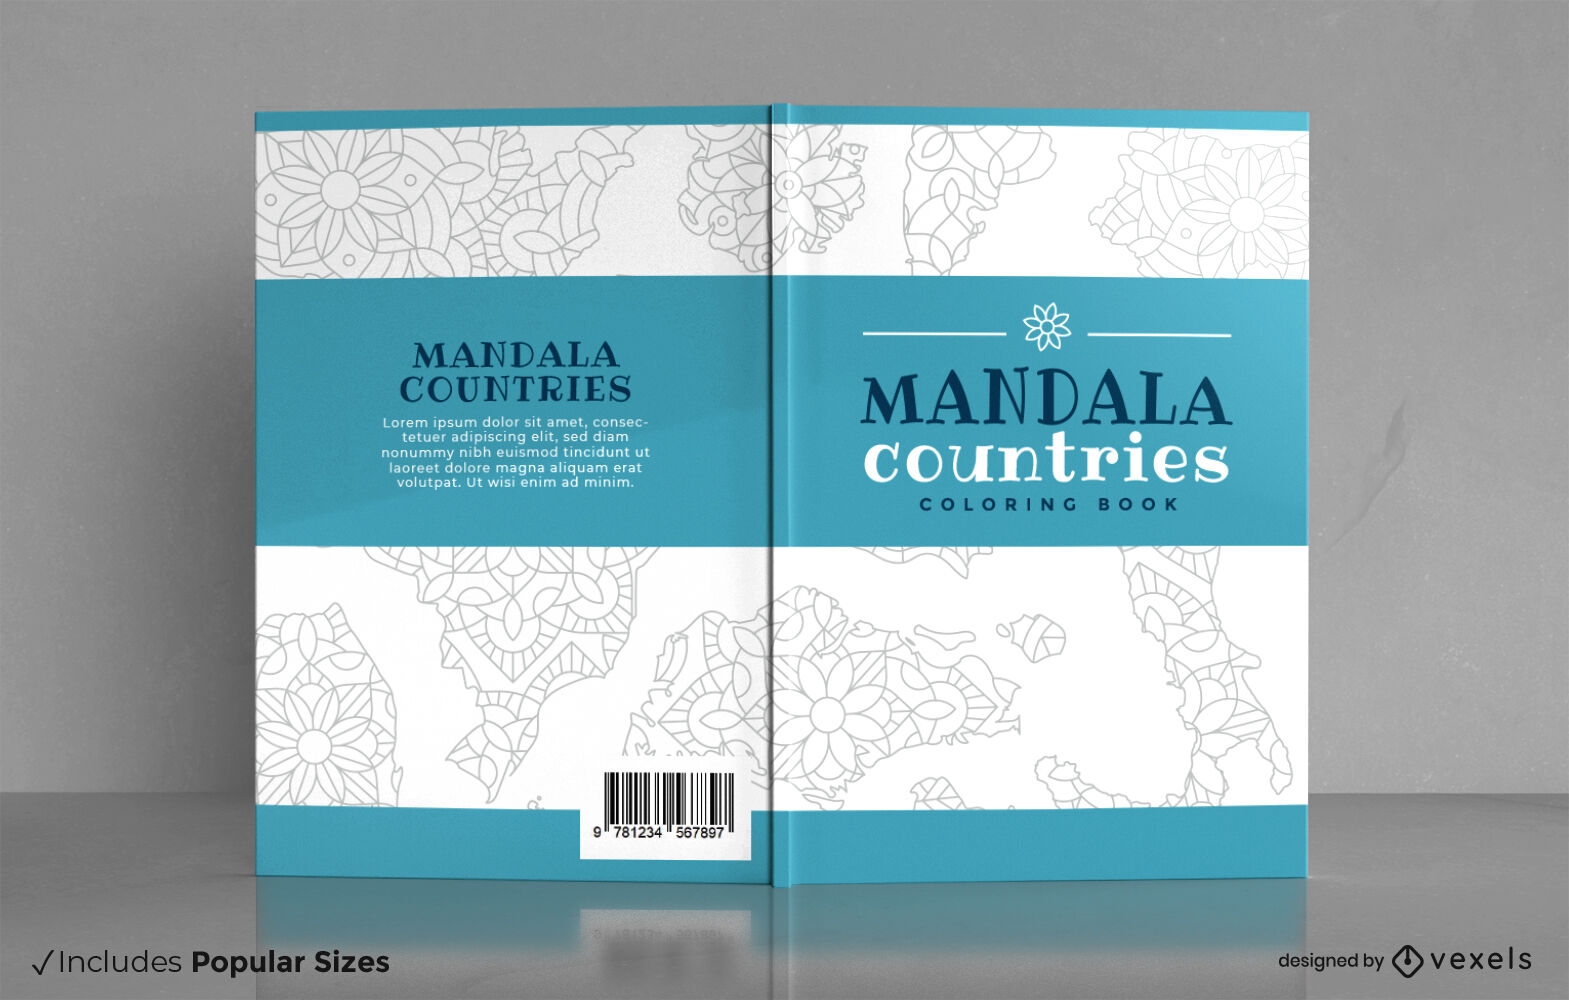 Mandala countries coloring book cover design